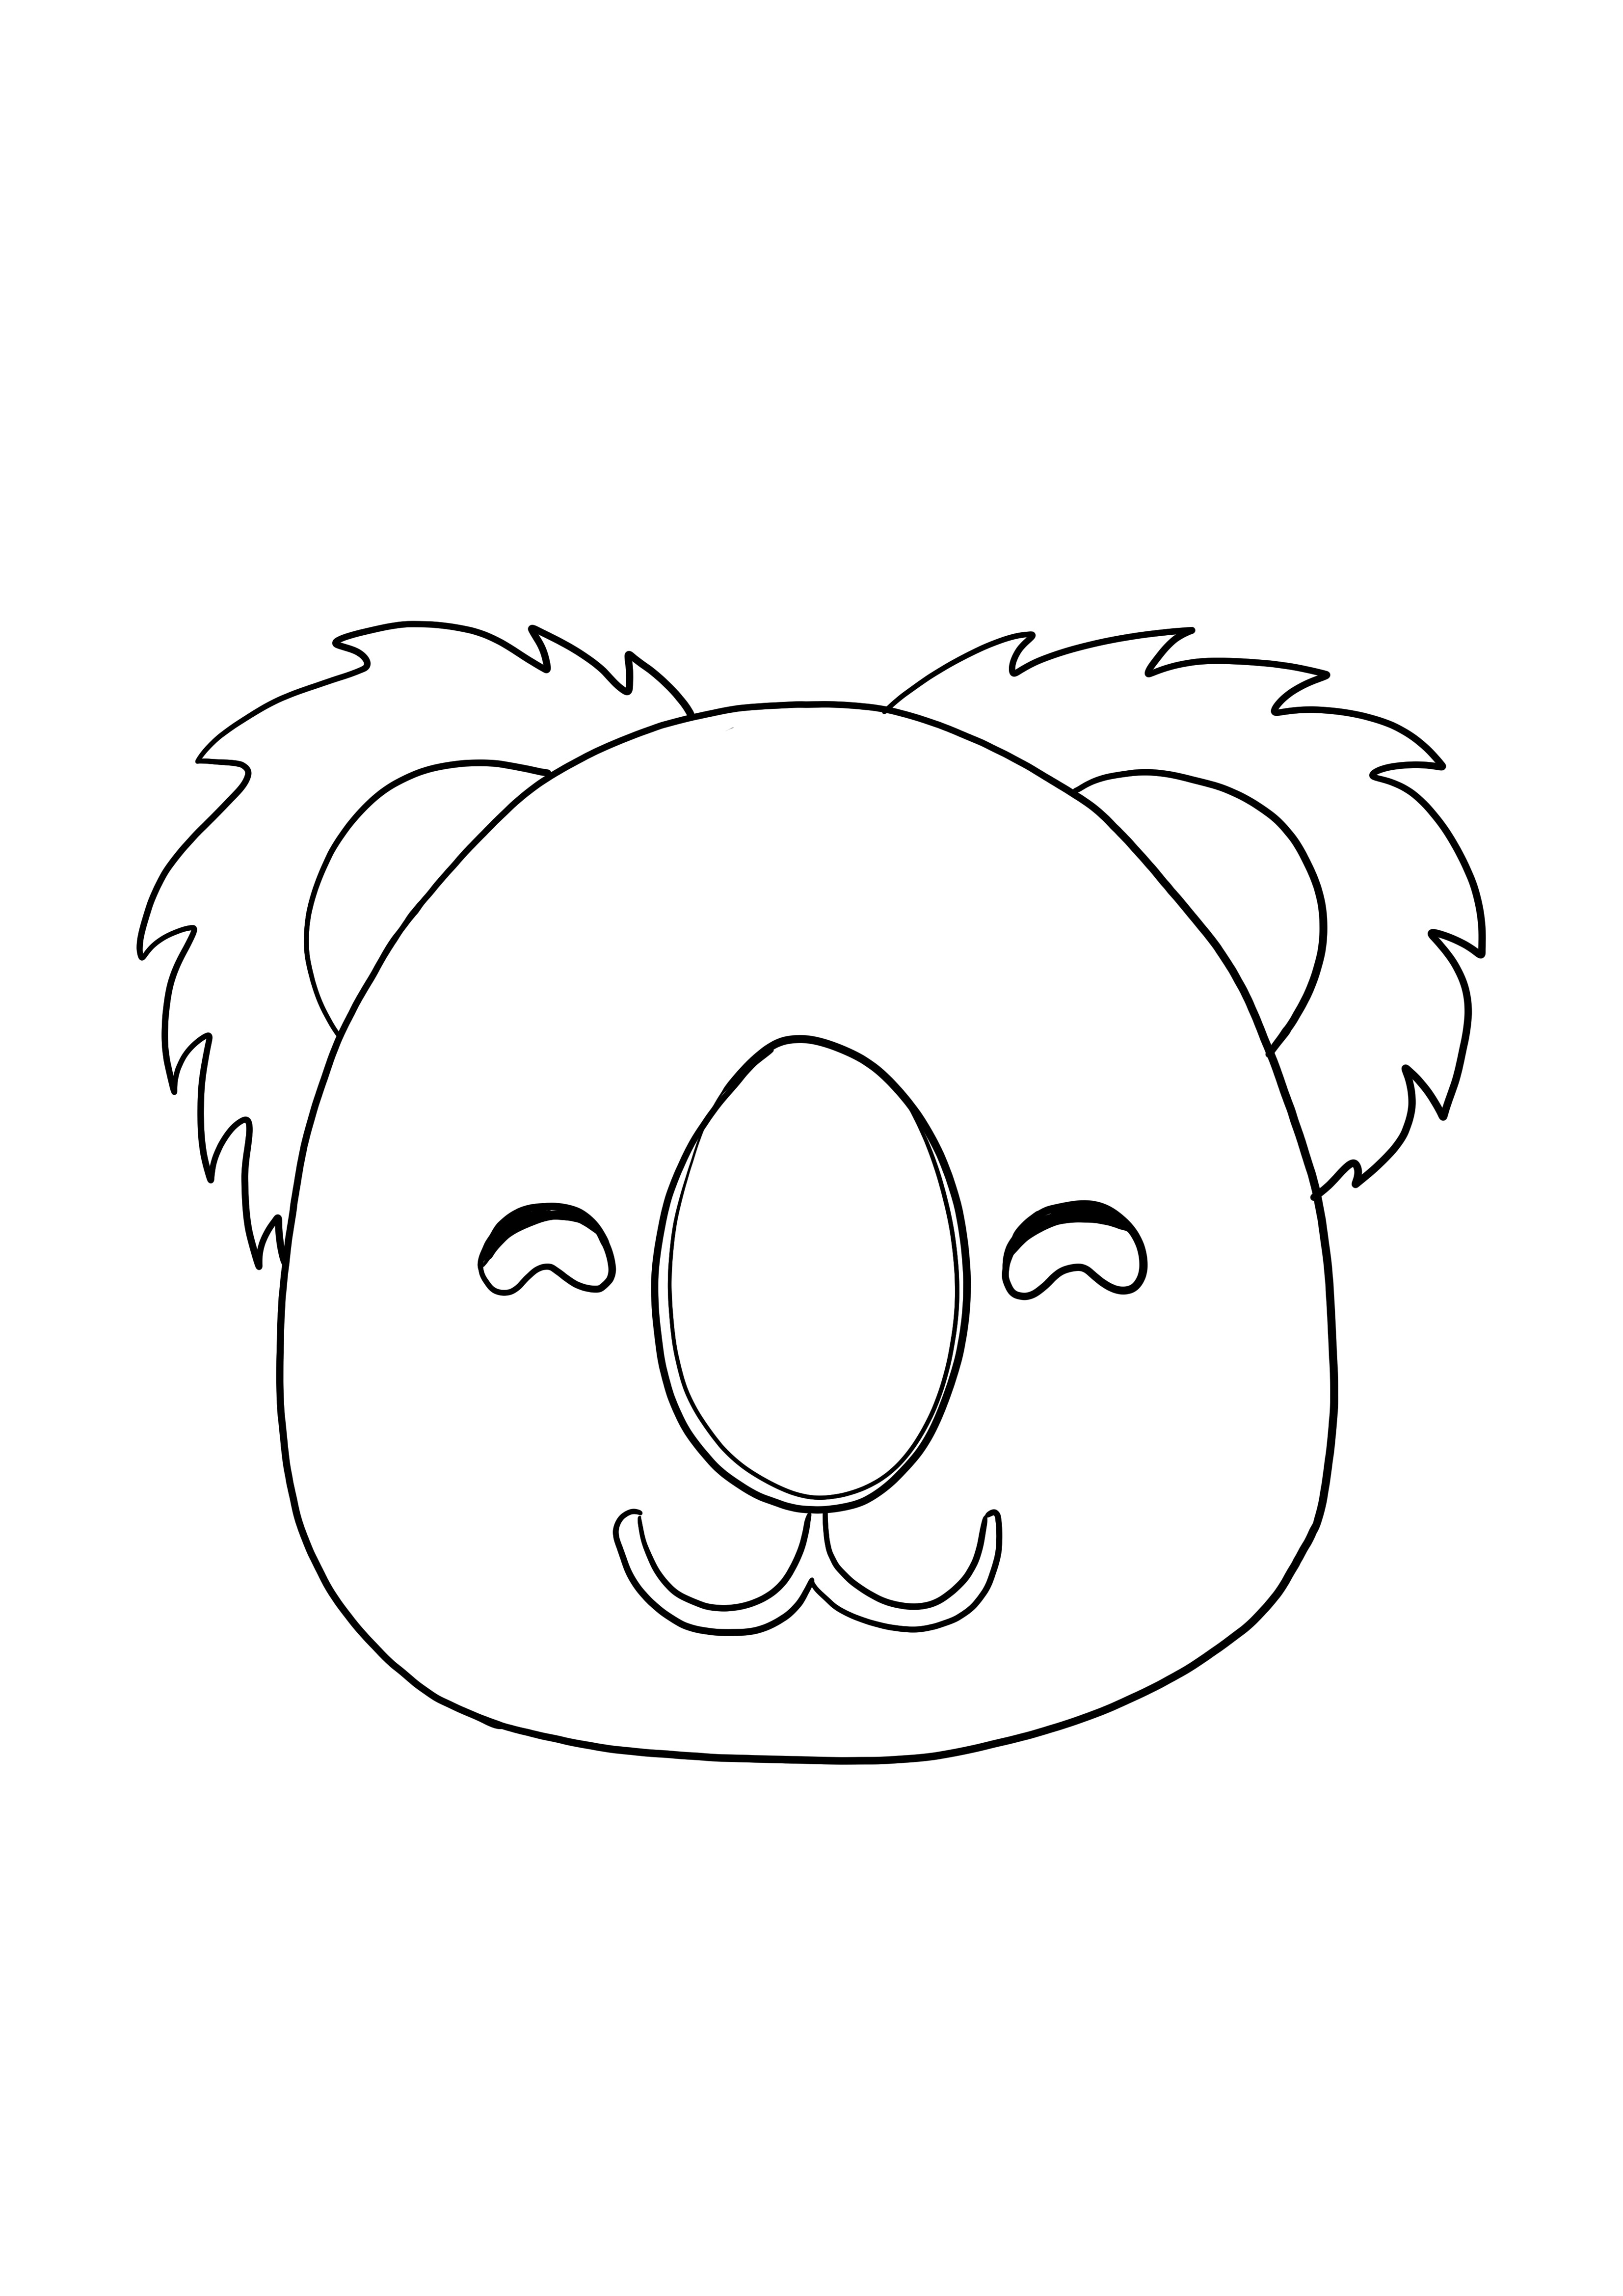 O rosto do coala sorrindo para colorir para crianças de graça